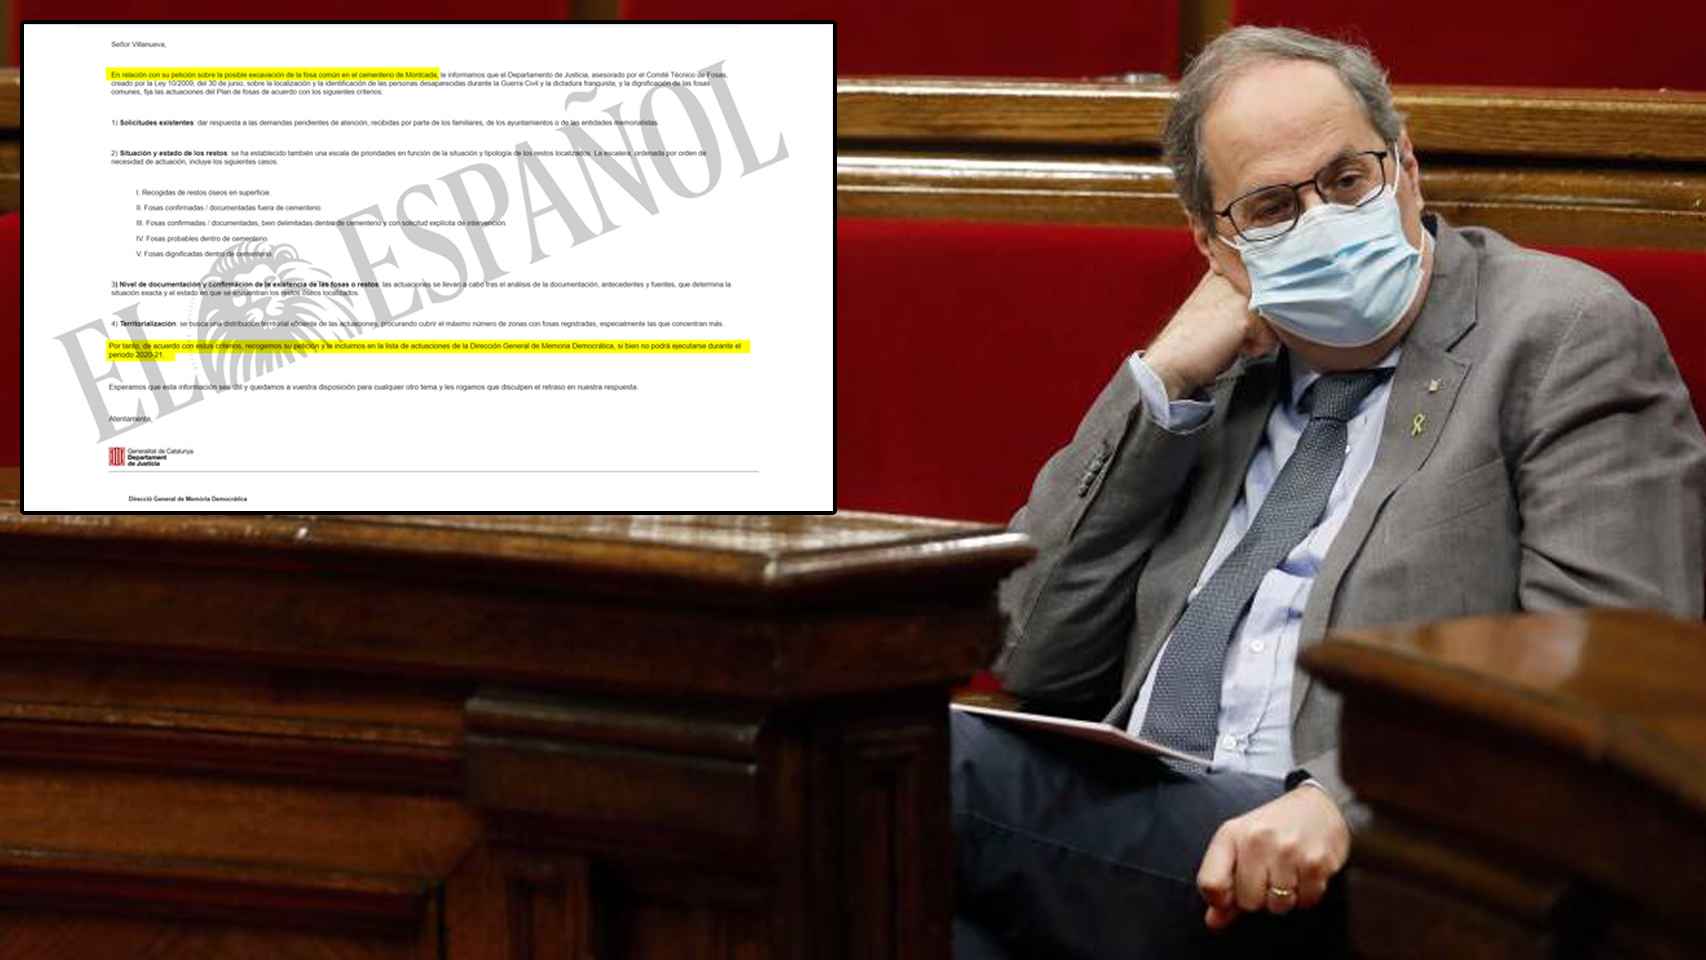 El presidente de la Generalitat, Quim Torra, exhumará una fosa de víctimas de la retaguardia republicana a petición de una asociación franquista.